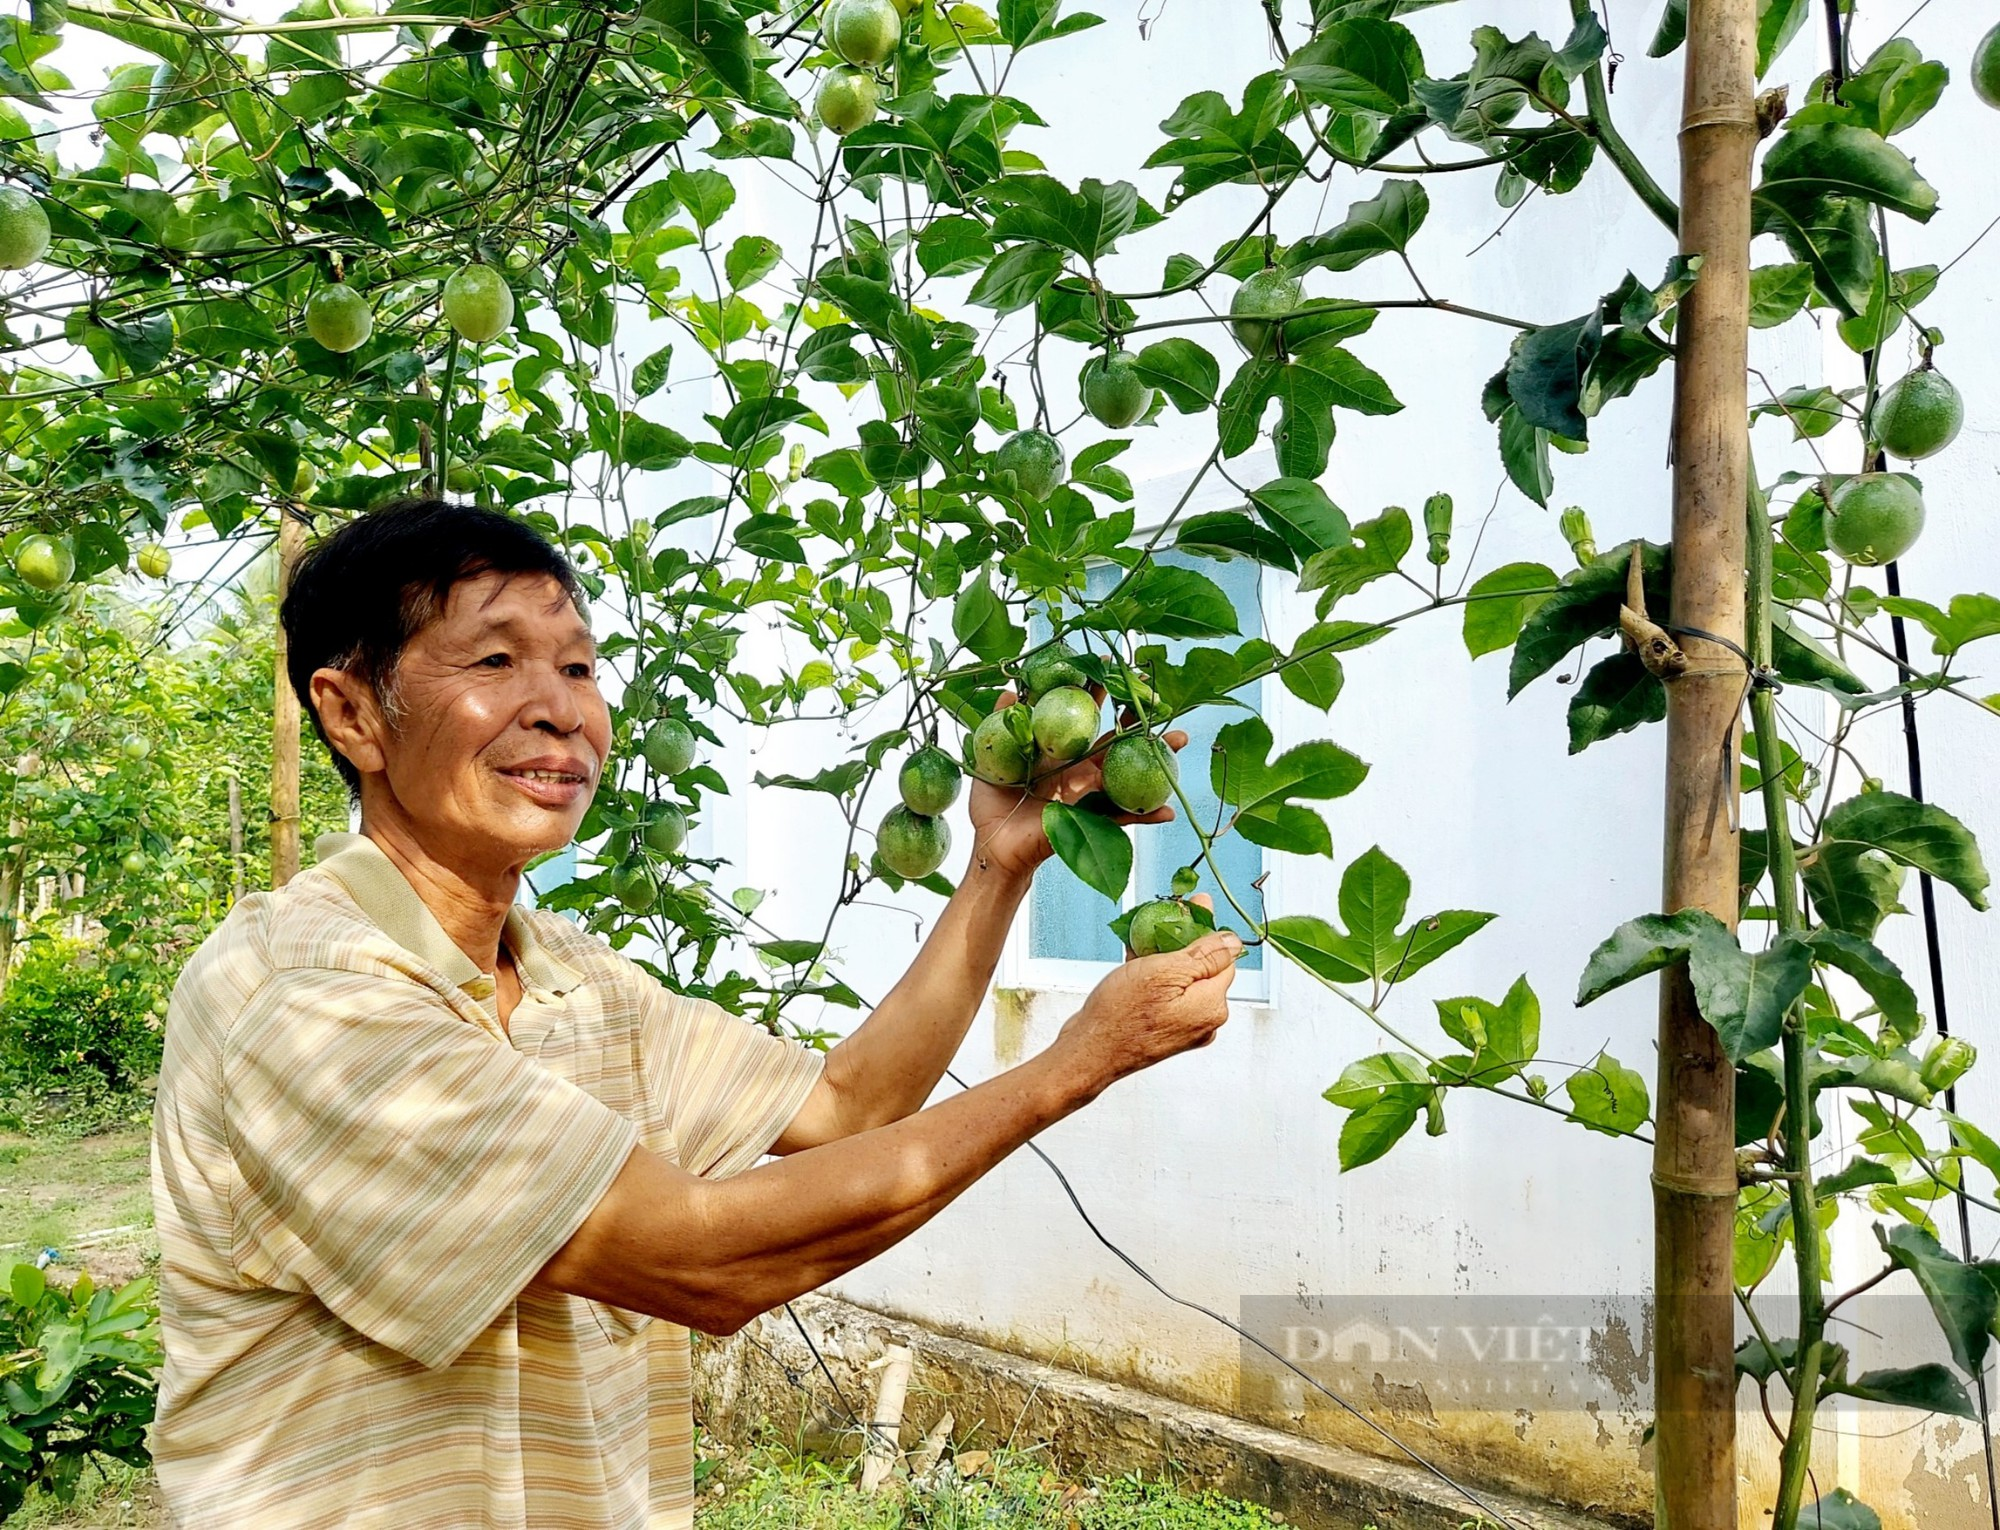 Đem cây chanh dây ghép với cây nhãn lồng, lão nông ở Sóc Trăng trở thành Nông dân Việt Nam xuất sắc năm 2023 - Ảnh 2.